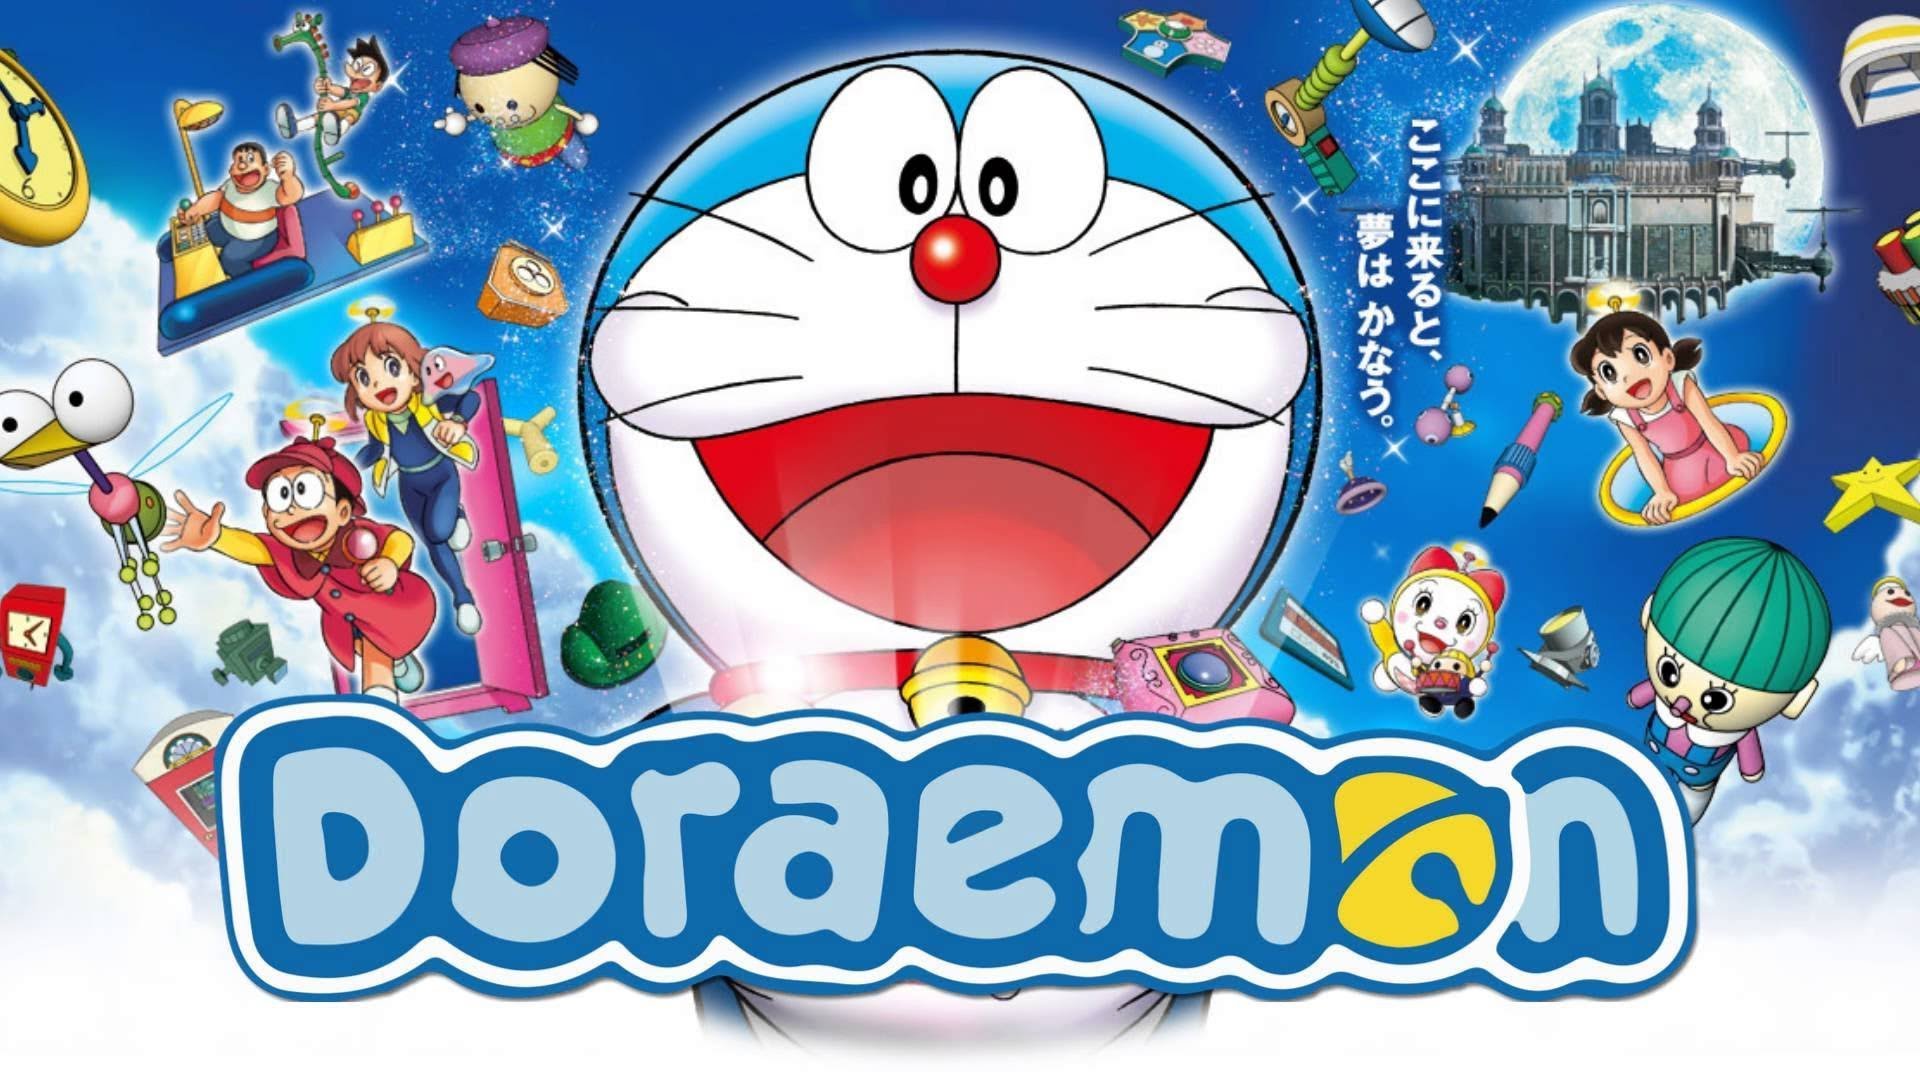 Với khẩu súng thần kì của Doraemon, không gì là không thể ! Hãy chiêm ngưỡng sức mạnh thần kì của khẩu súng này qua những hình ảnh đầy màu sắc và độc đáo. Sẽ không bao giờ làm bạn thất vọng.